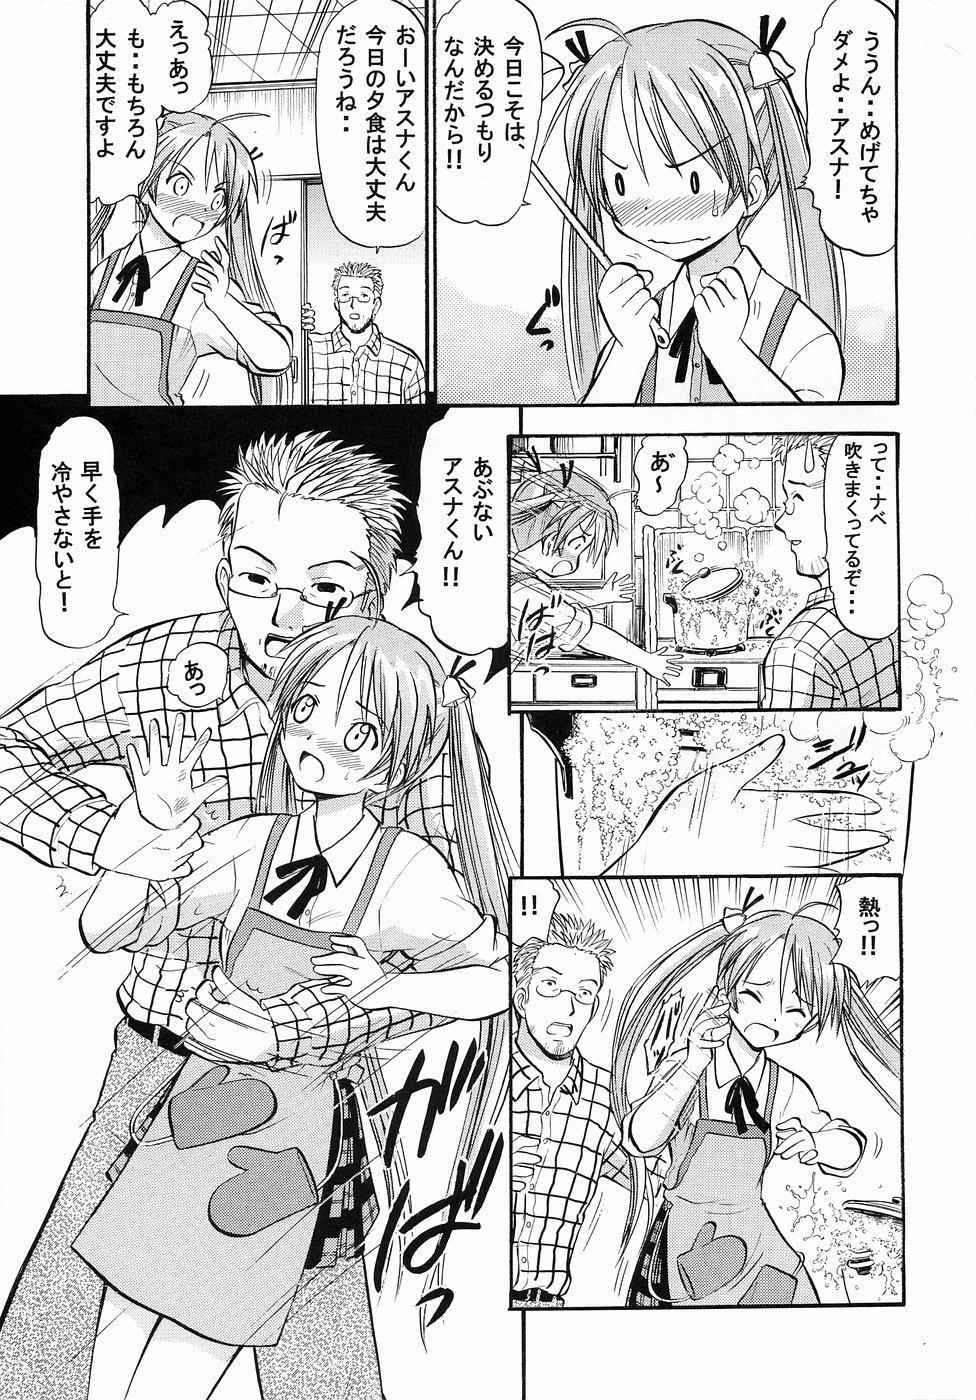 Tinder Asuna no Koi Suru Heart - Mahou sensei negima Beurette - Page 4